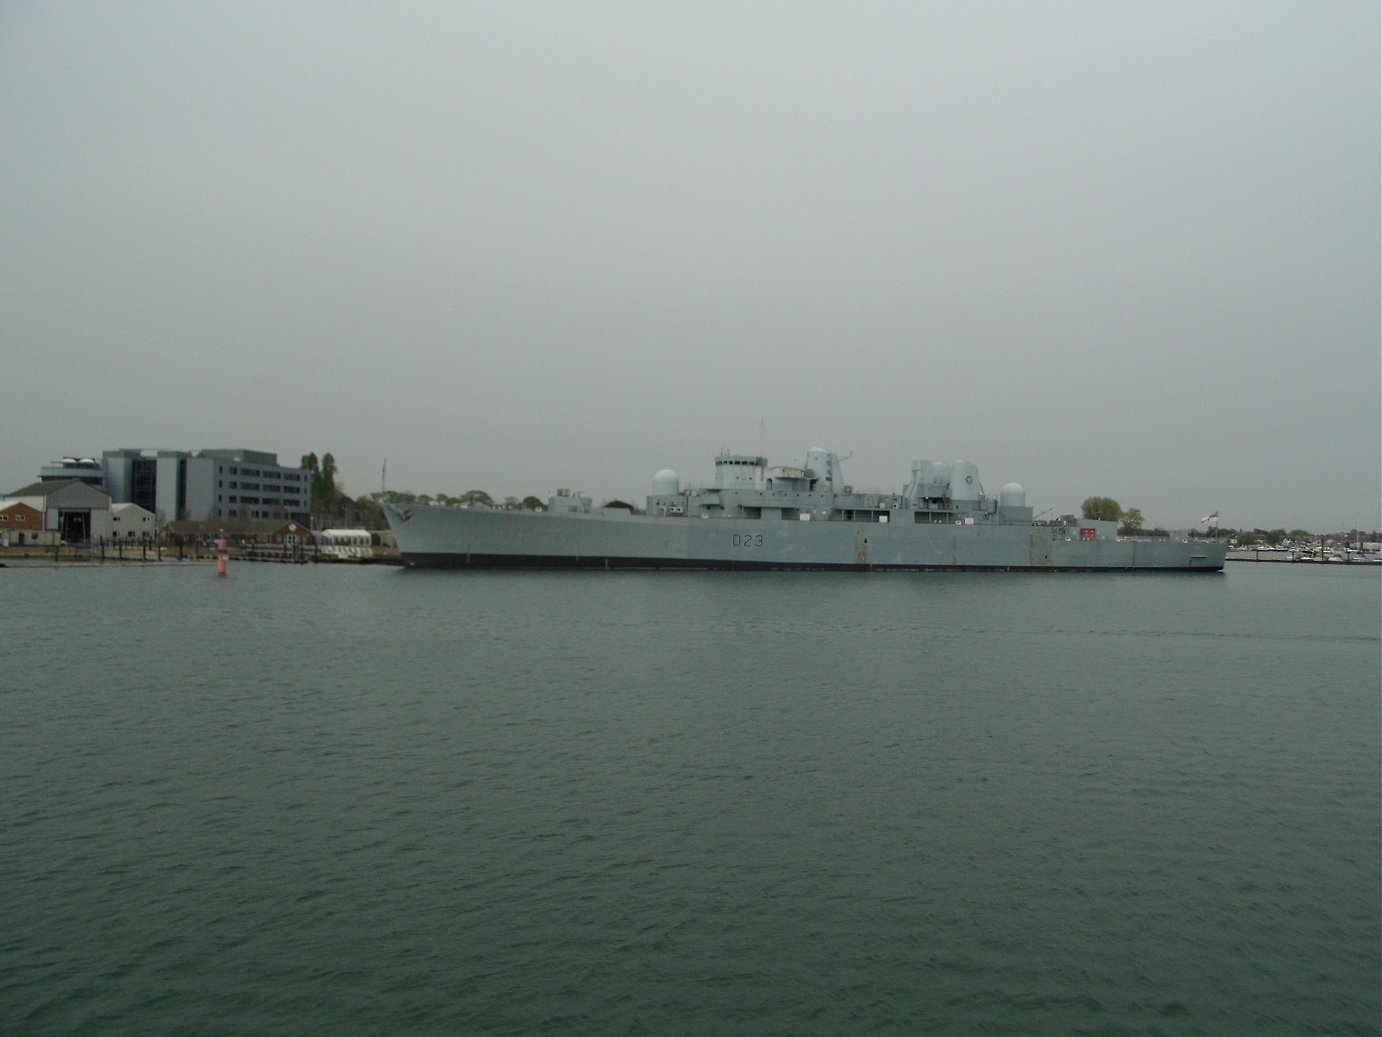 Type 82 destroyer H.M.S. Bristol D23 at Portsmouth Naval Base 23 April 2019